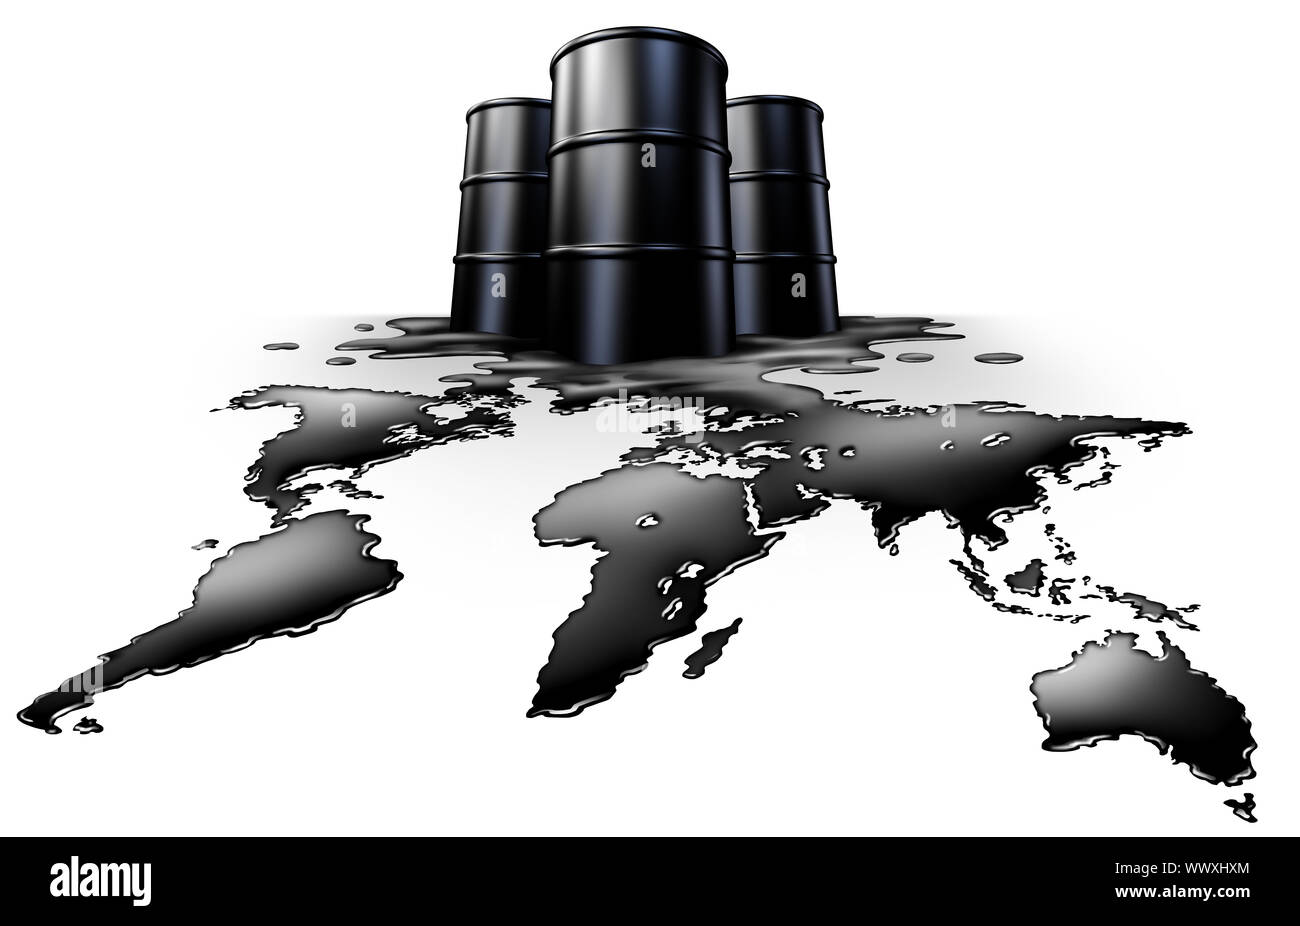 Crise pétrolière mondiale energy concept et symbole des exportations de pétrole comme une icône de l'offre mondiales de combustibles fossiles comme un déversement en forme de la planète. Banque D'Images